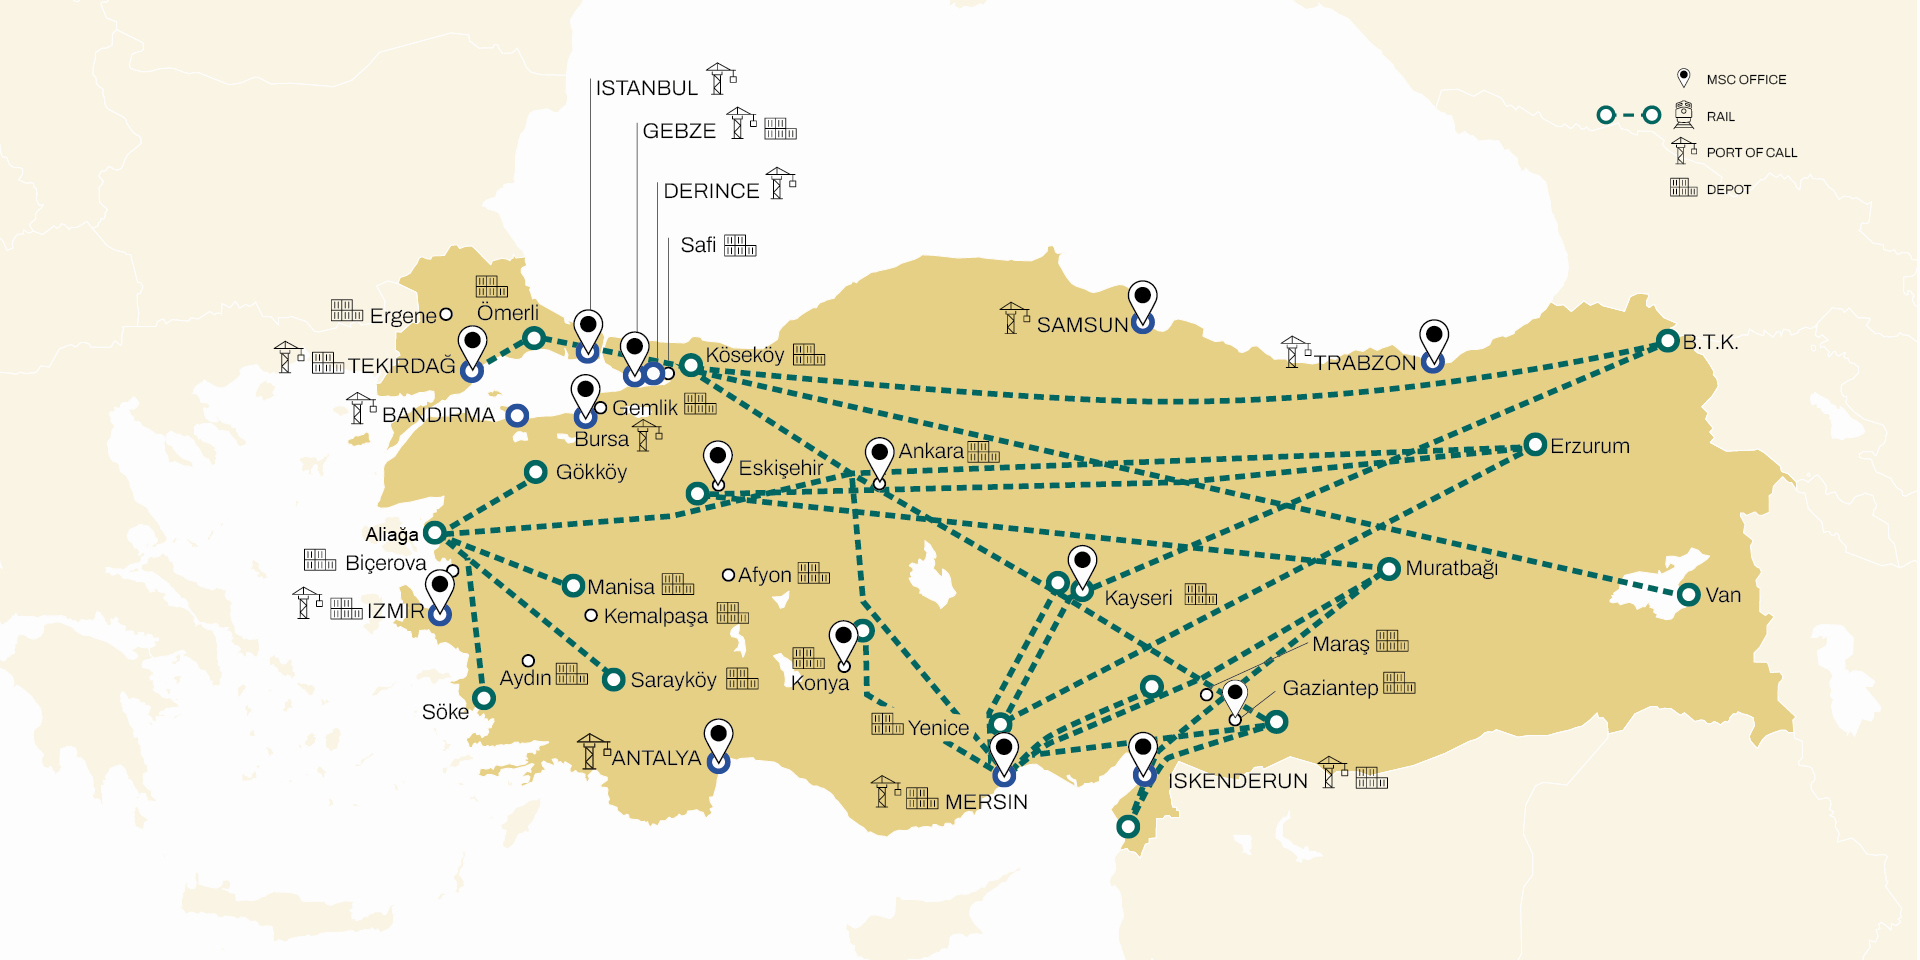 MSC Türkiye inland network